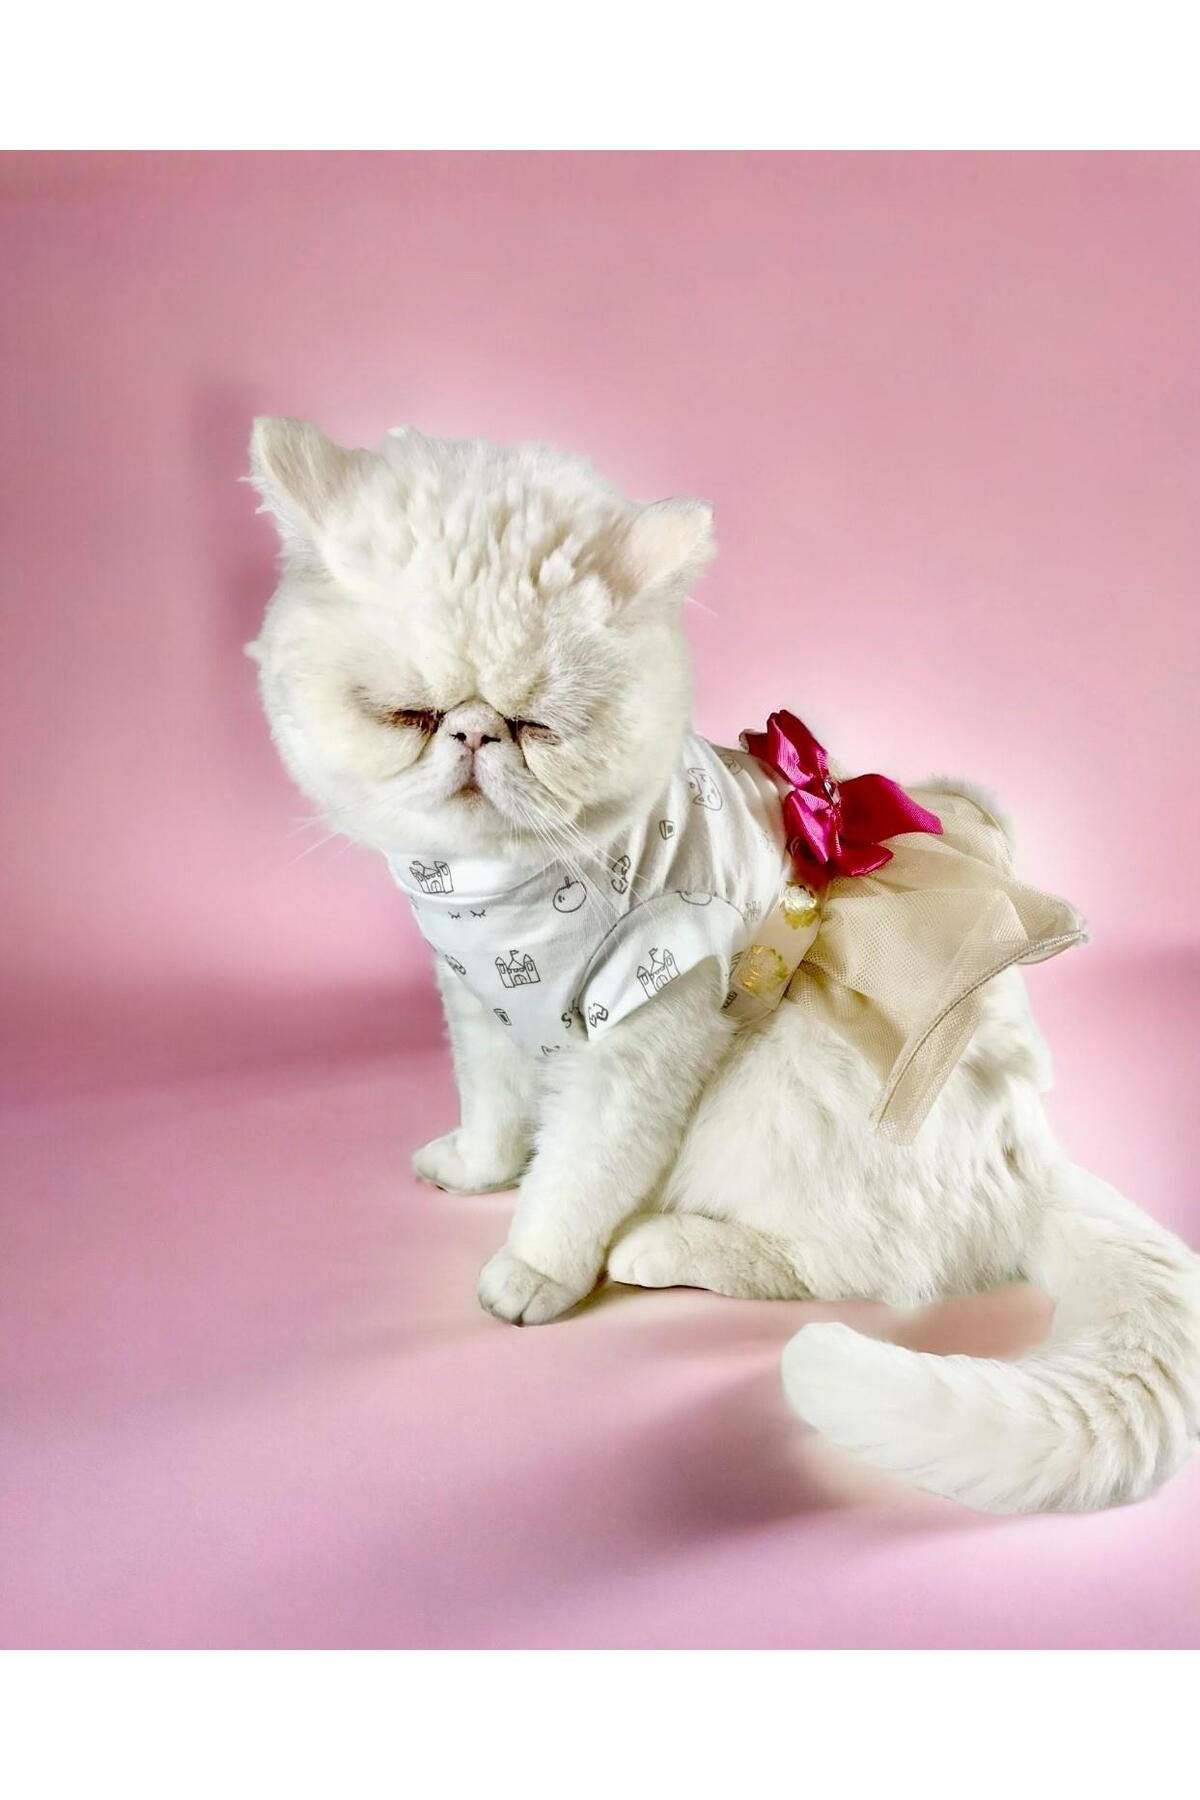 Kemique Creamy Fuschia Tütülü Kedi Elbisesi, Kıyafeti Tutu